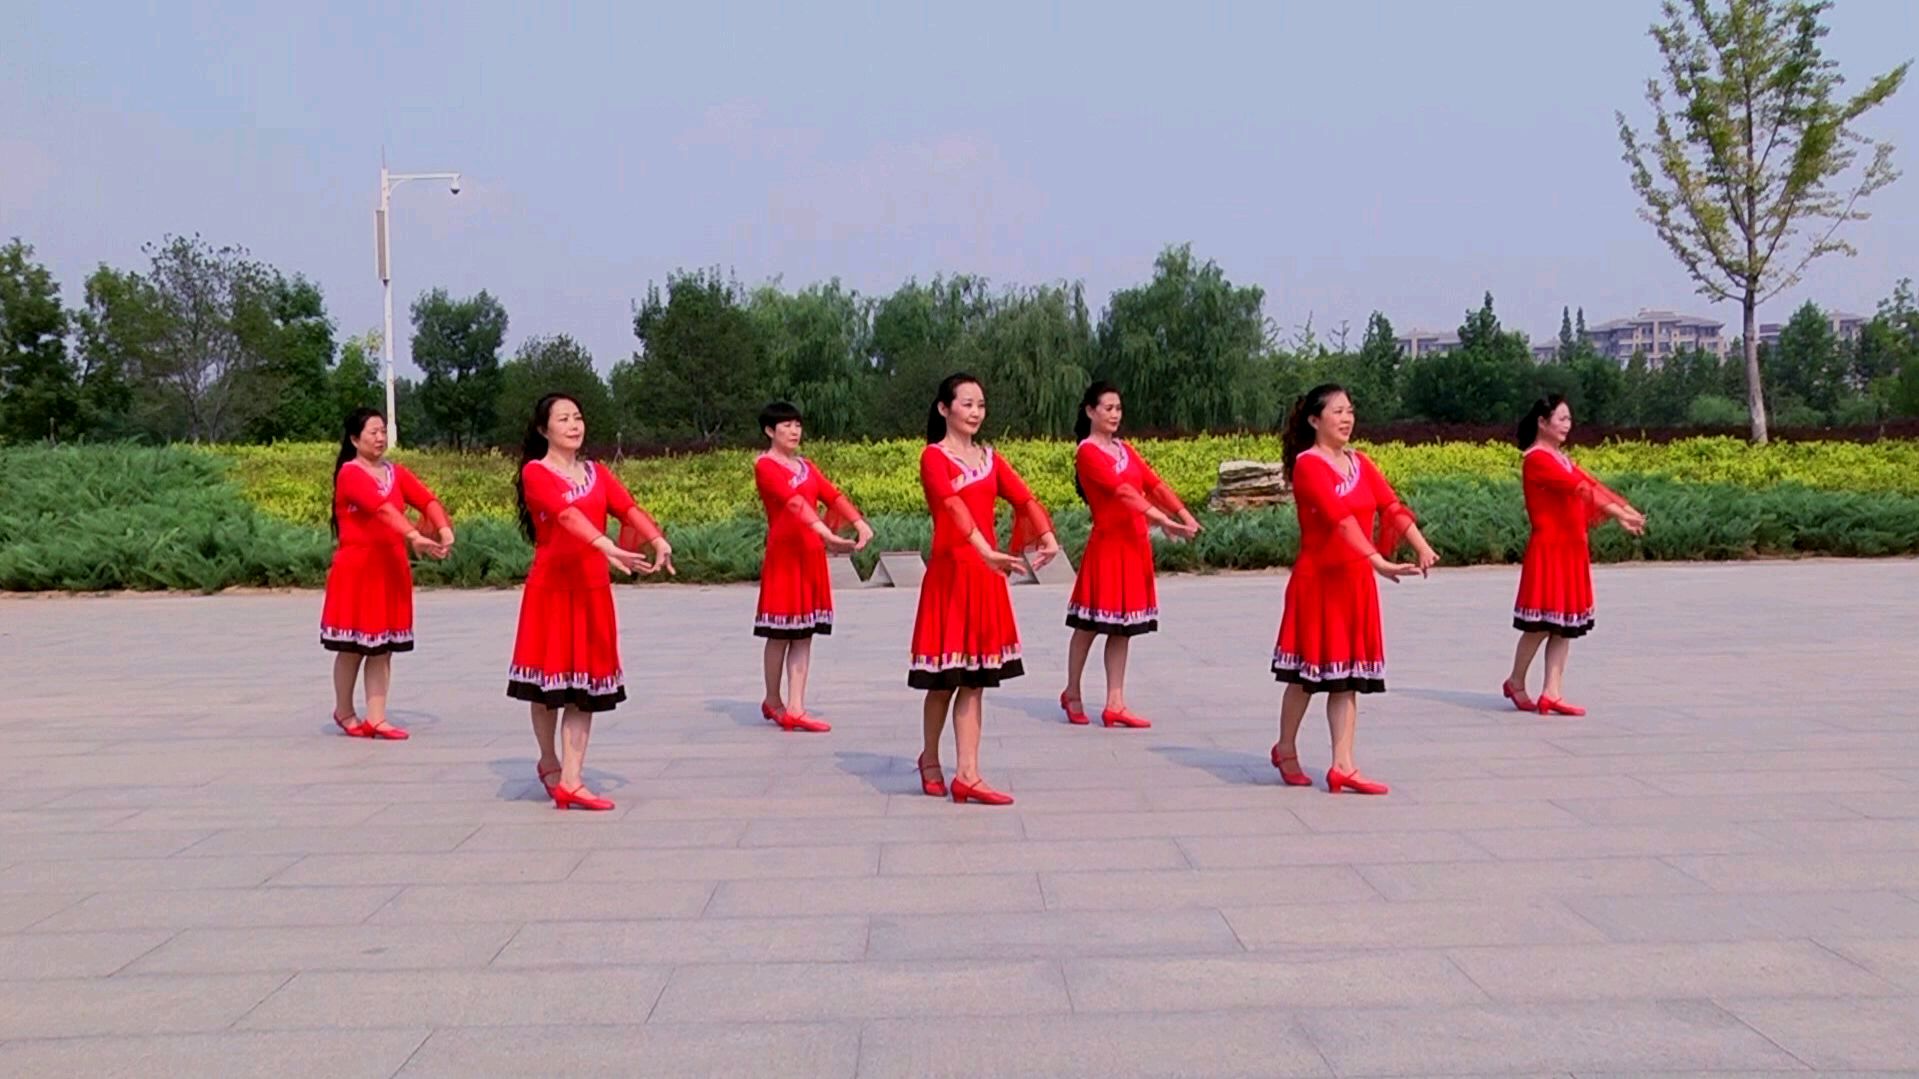 广场舞蒙古舞藏族舞新疆舞等各种民族舞教学大全